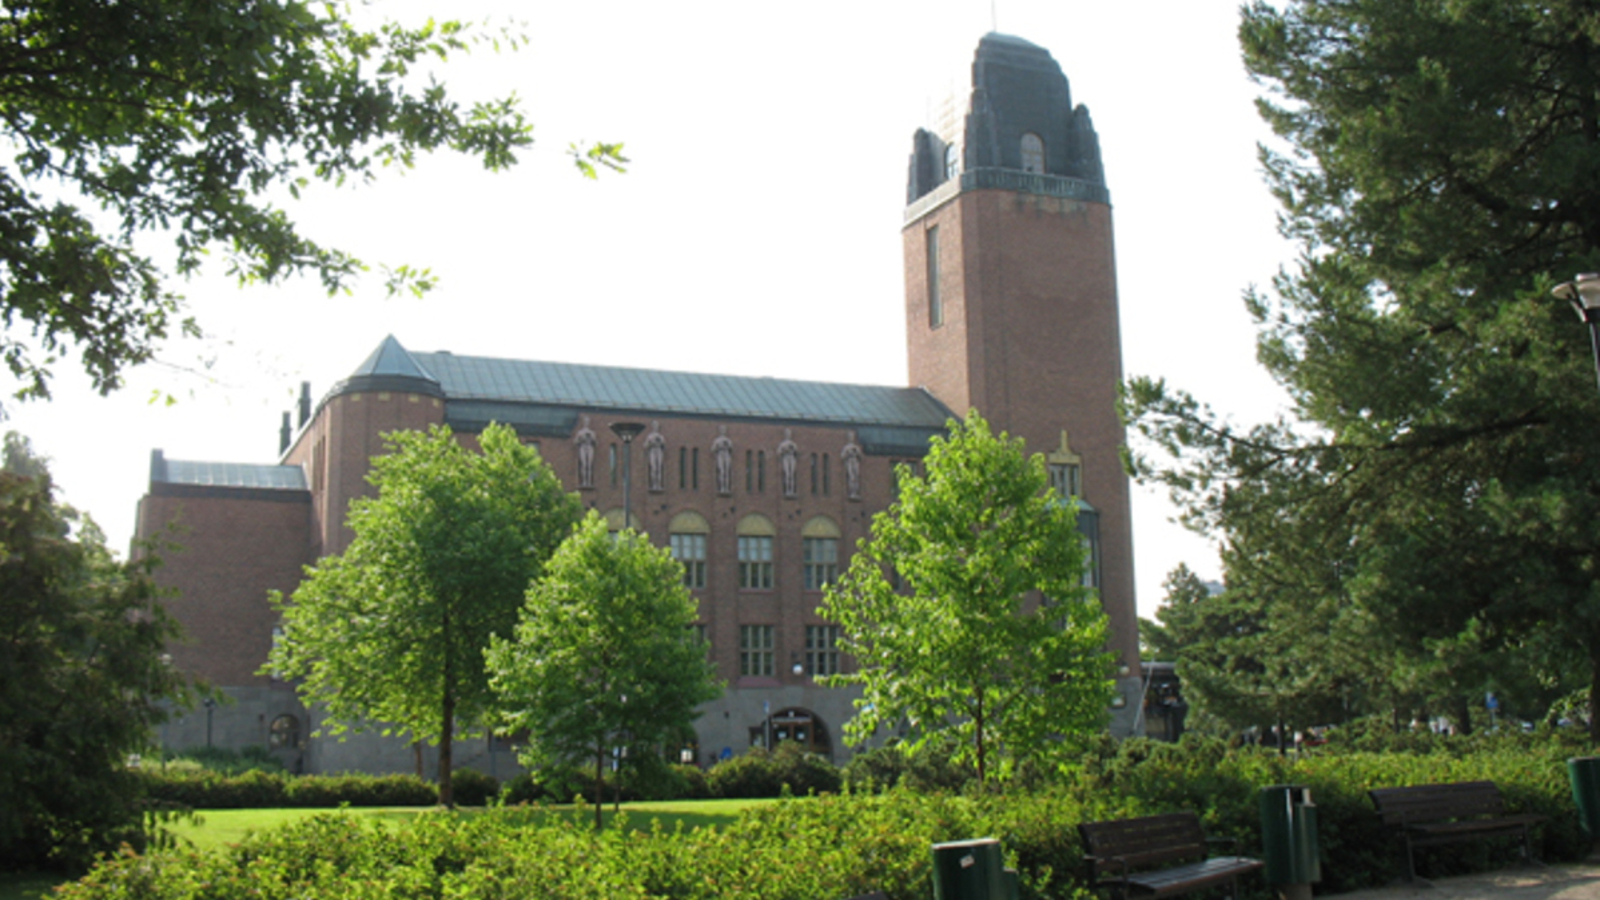 Kuvassa on Joensuun kaupungintalo ja se on punatiilinen kookas rakennus. Sen edustalla on vihreitä. lehtipuita ja pieni puisto.